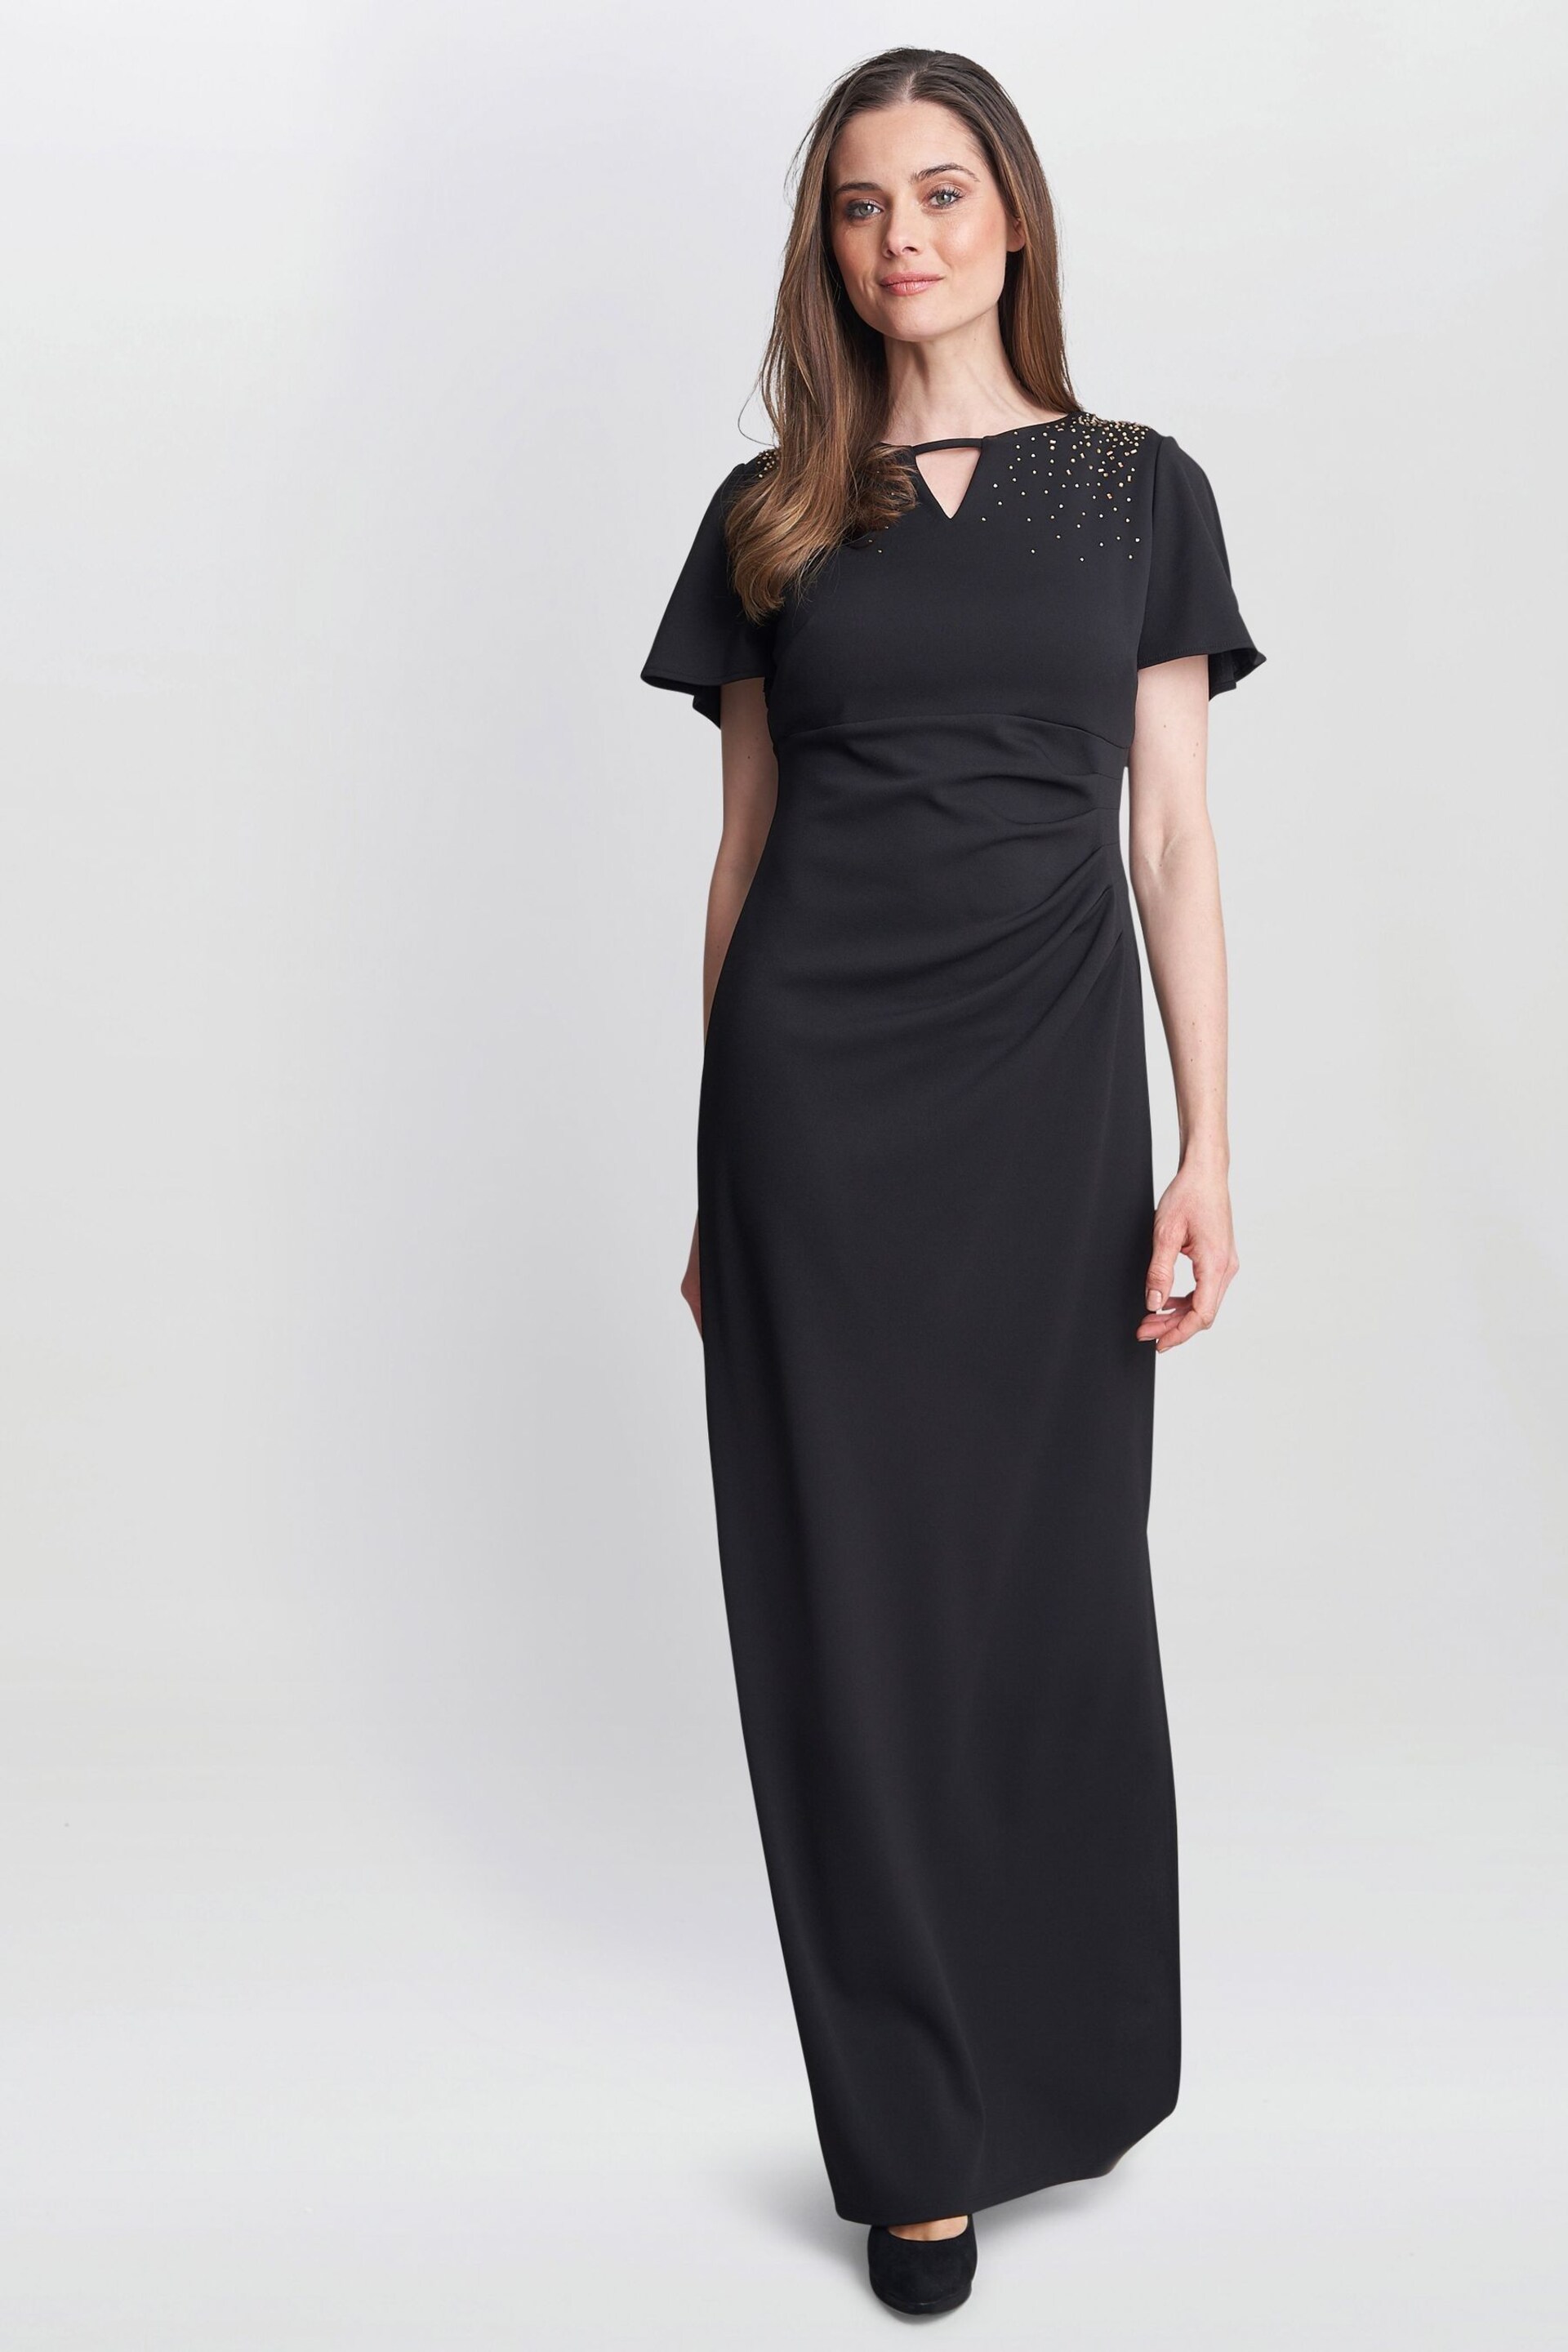 Gina Bacconi Betsy Maxi Black Dress With Keyhole Neck - Image 3 of 6